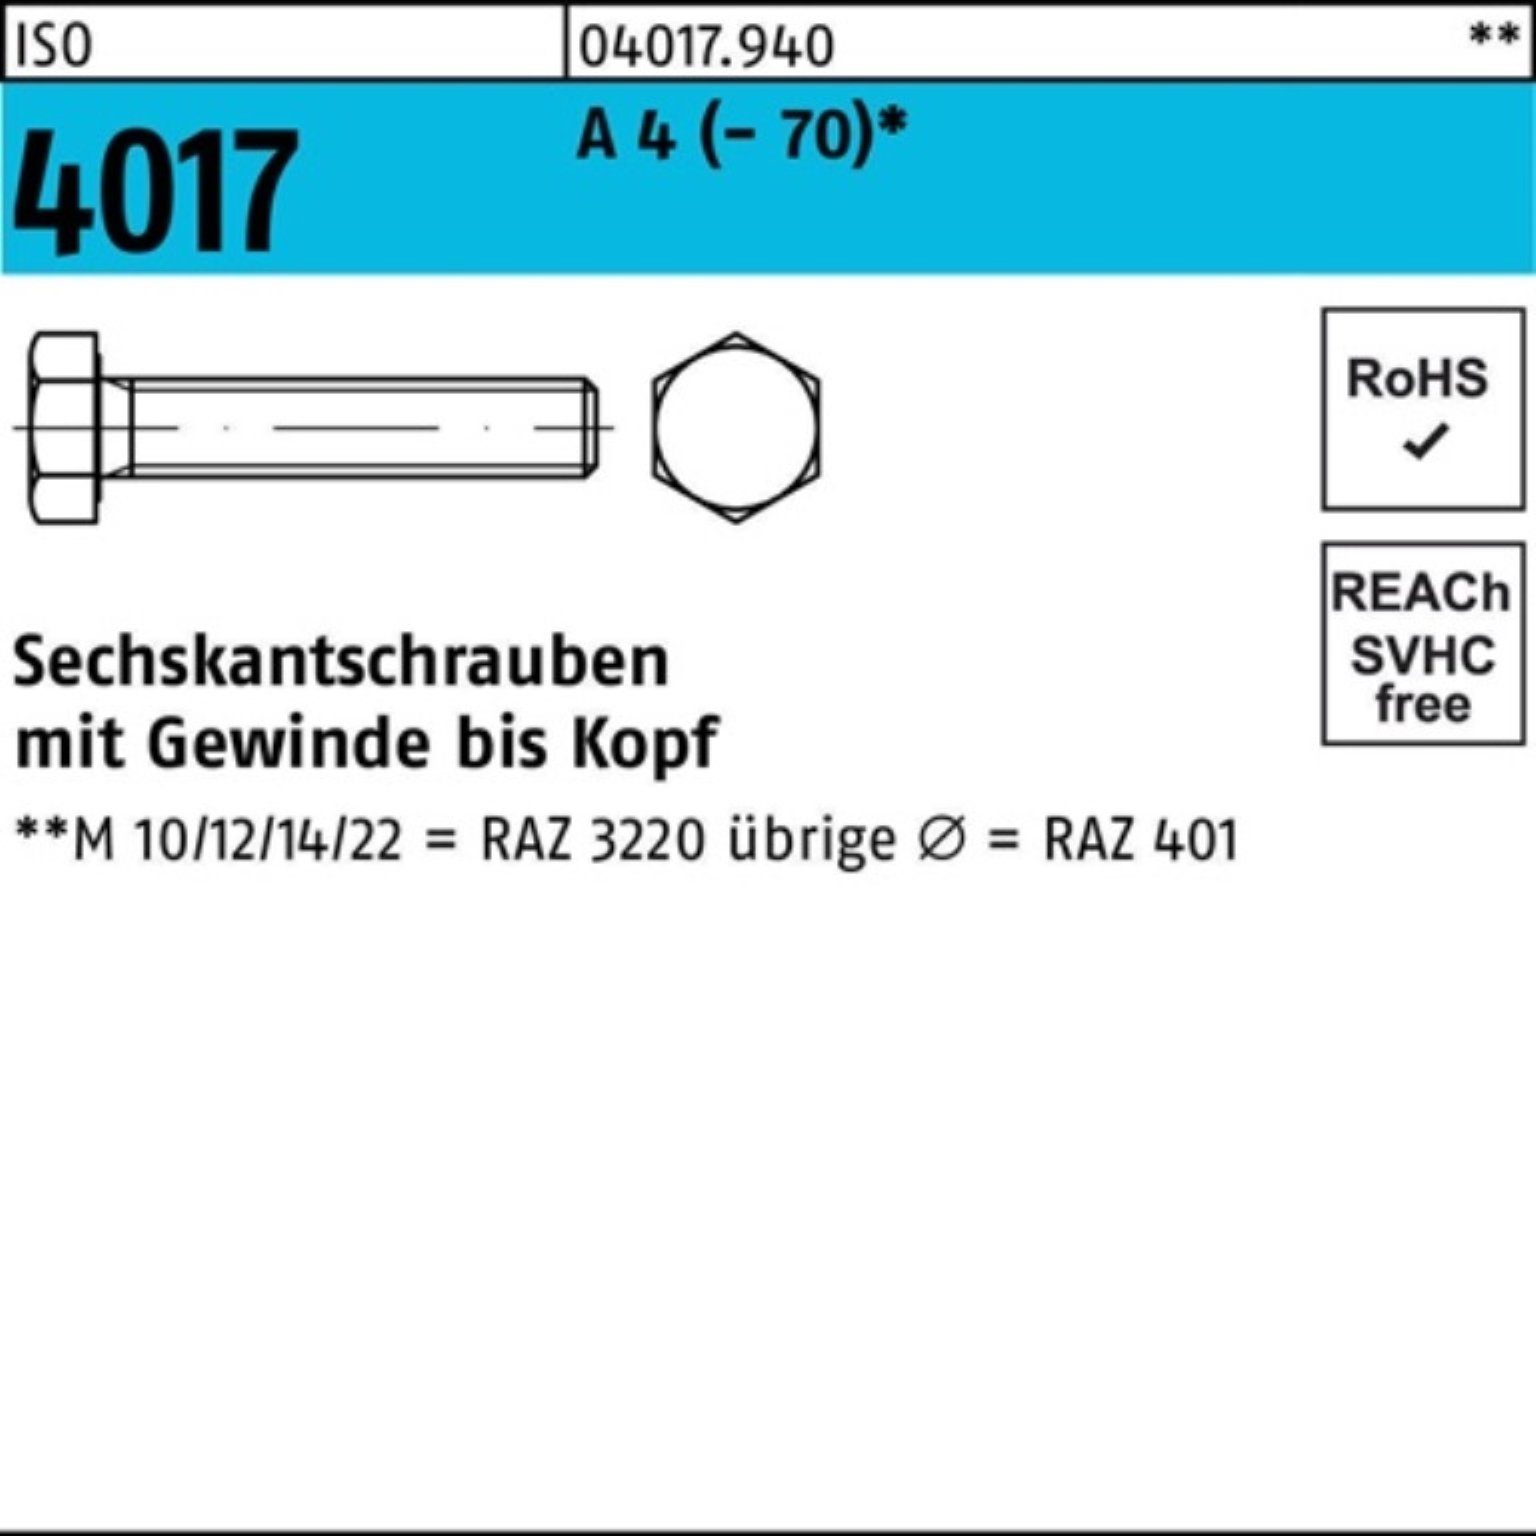 Bufab Sechskantschraube 100er Pack Sechskantschraube ISO 4017 VG M16x 35 A 4 (70) 50 Stück